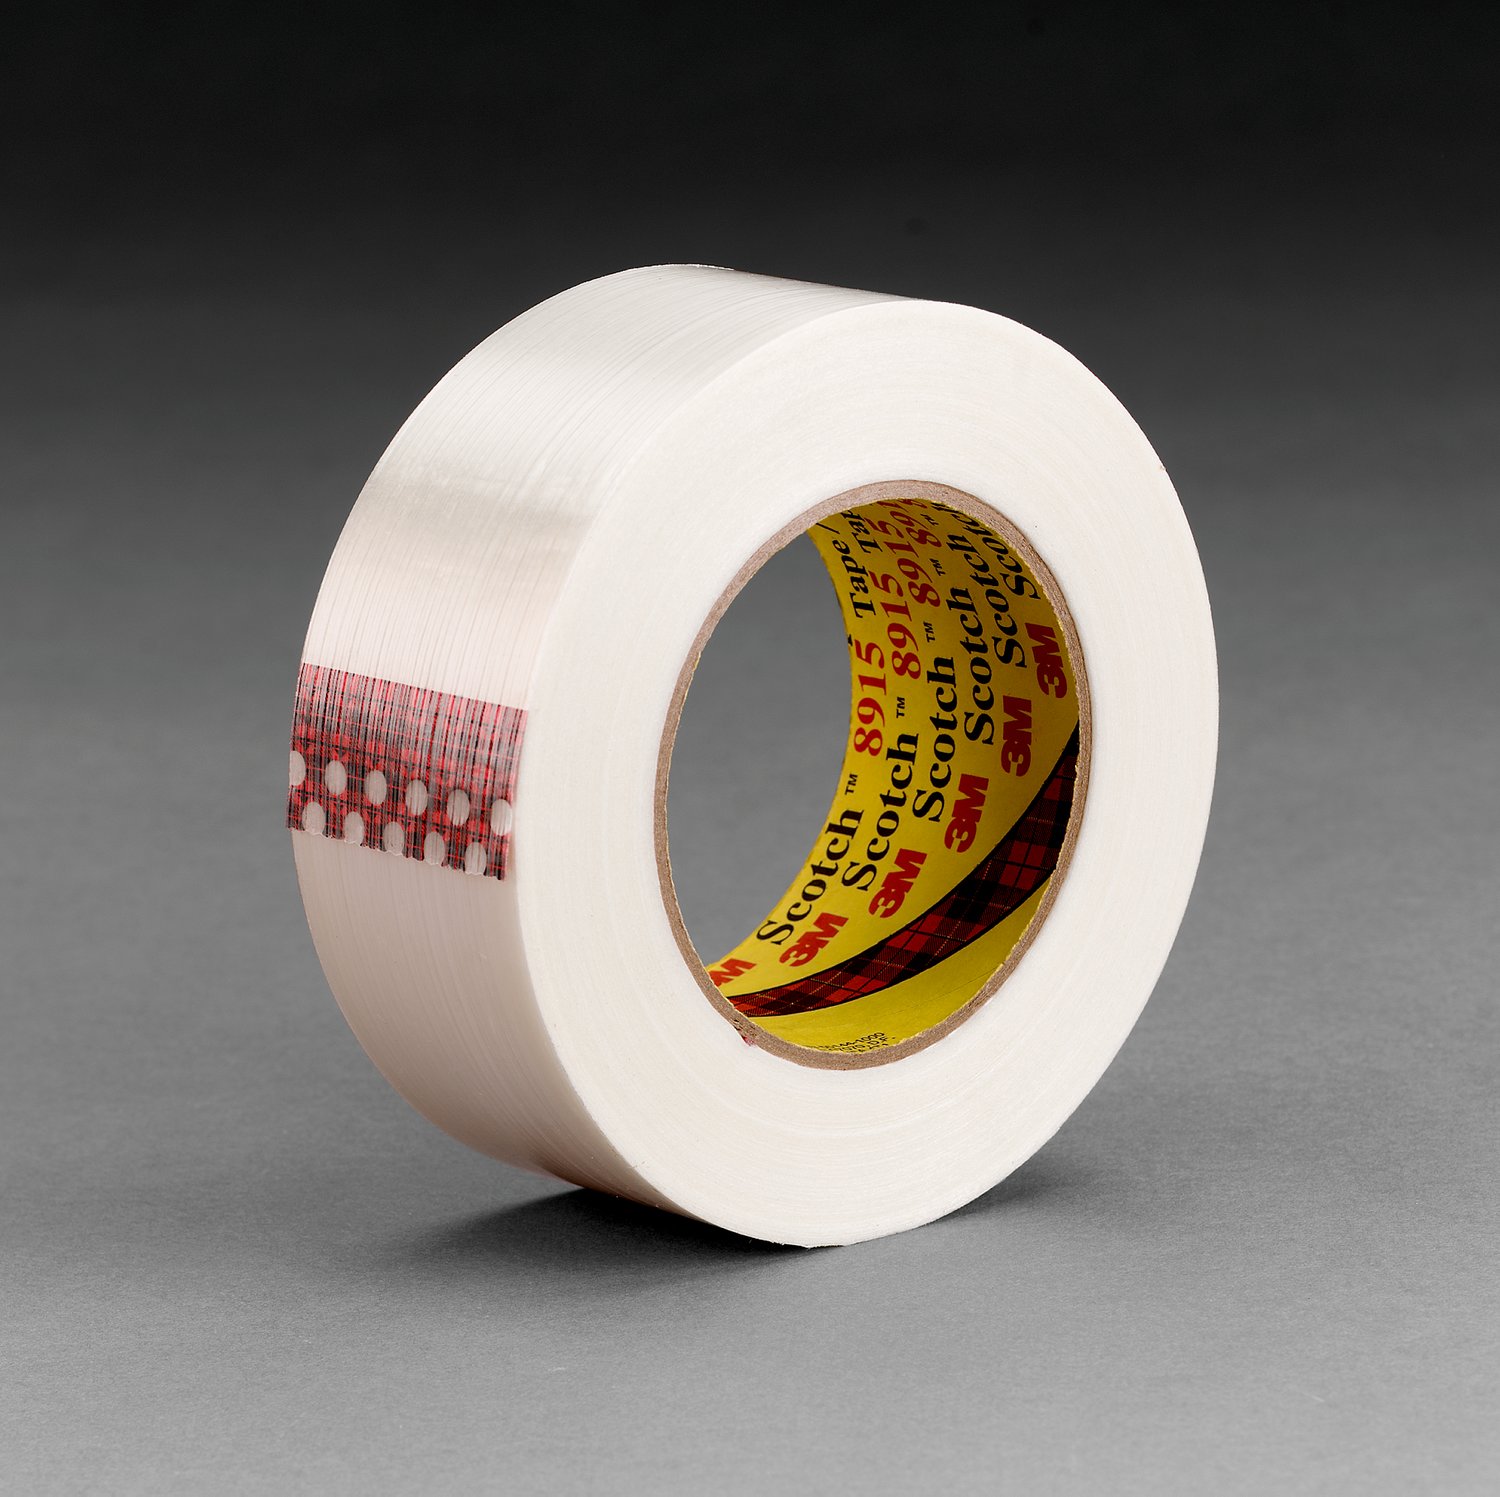 7000048607 - Scotch Filament Tape Clean Removal 8915, 36 mm x 55 m, 6 mil, 24 rolls
per case